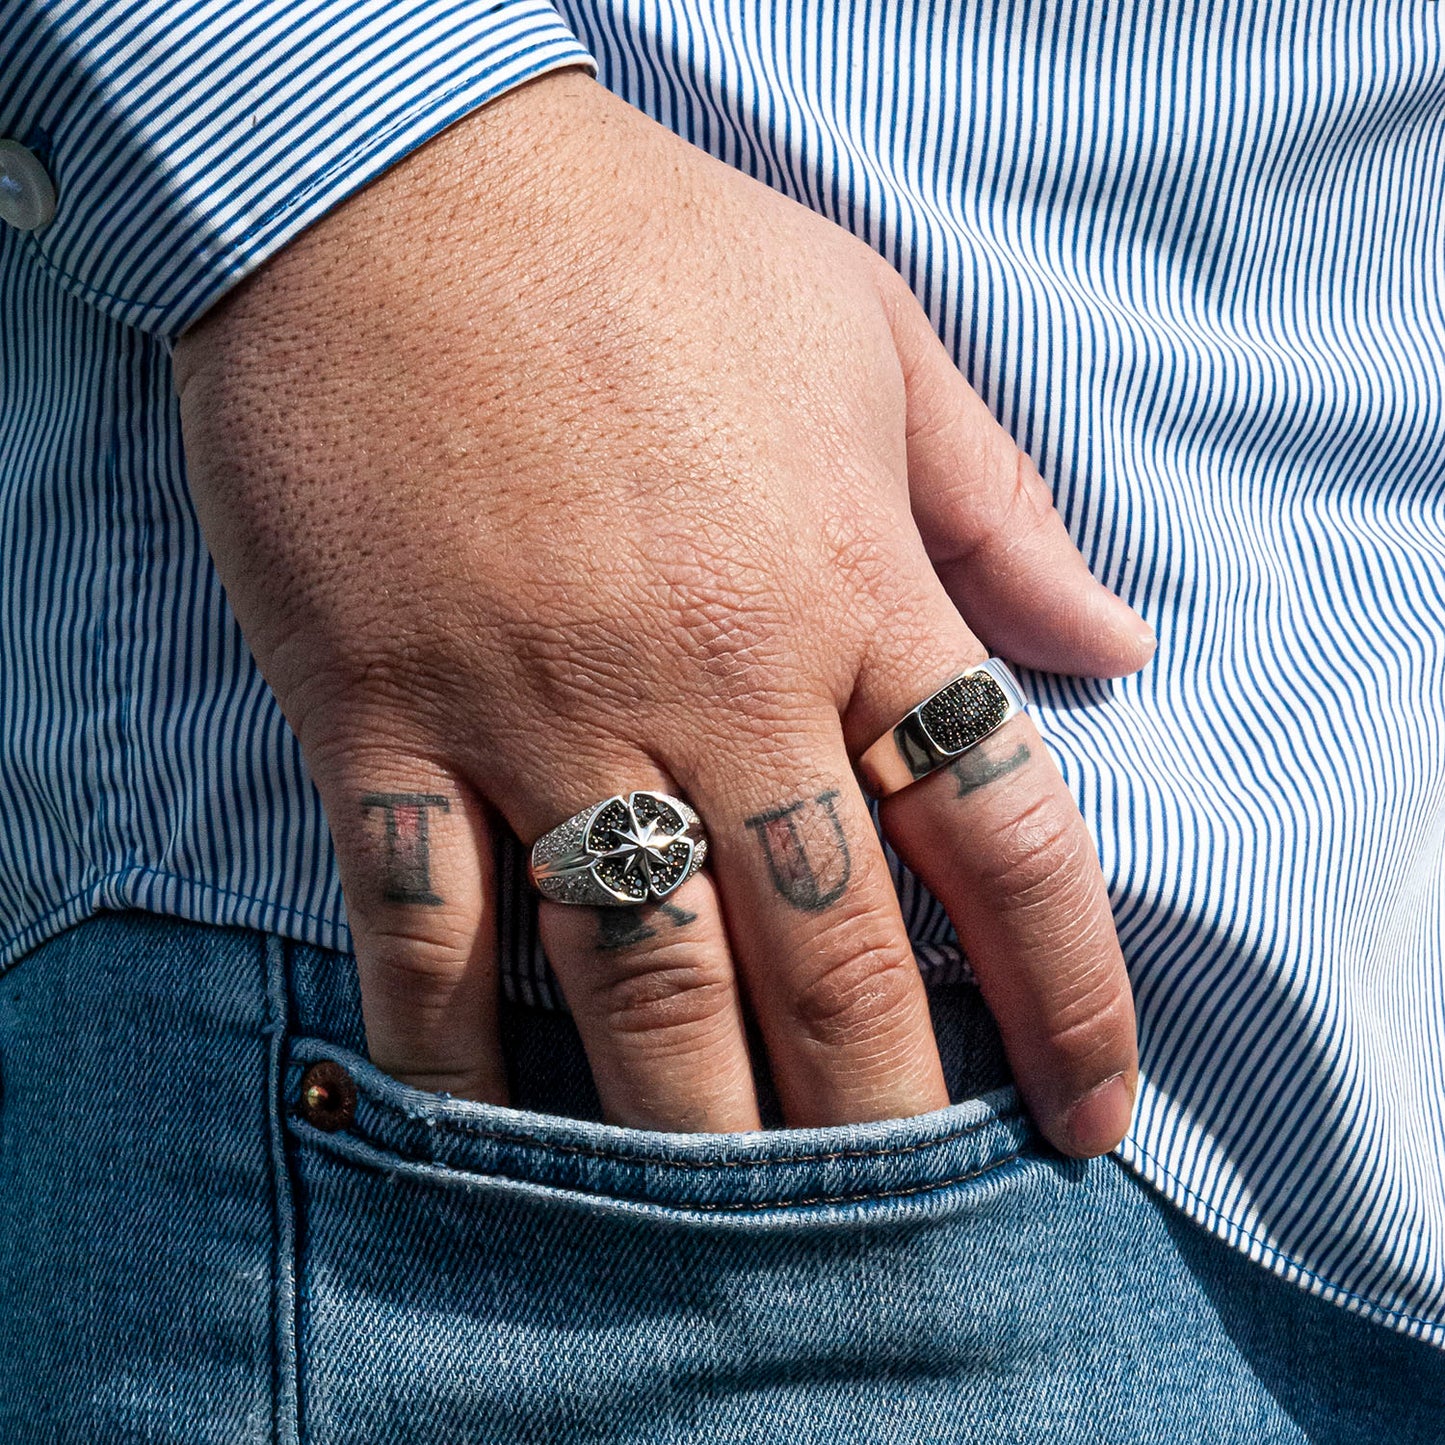 Black & White Diamond Ring In man fingers